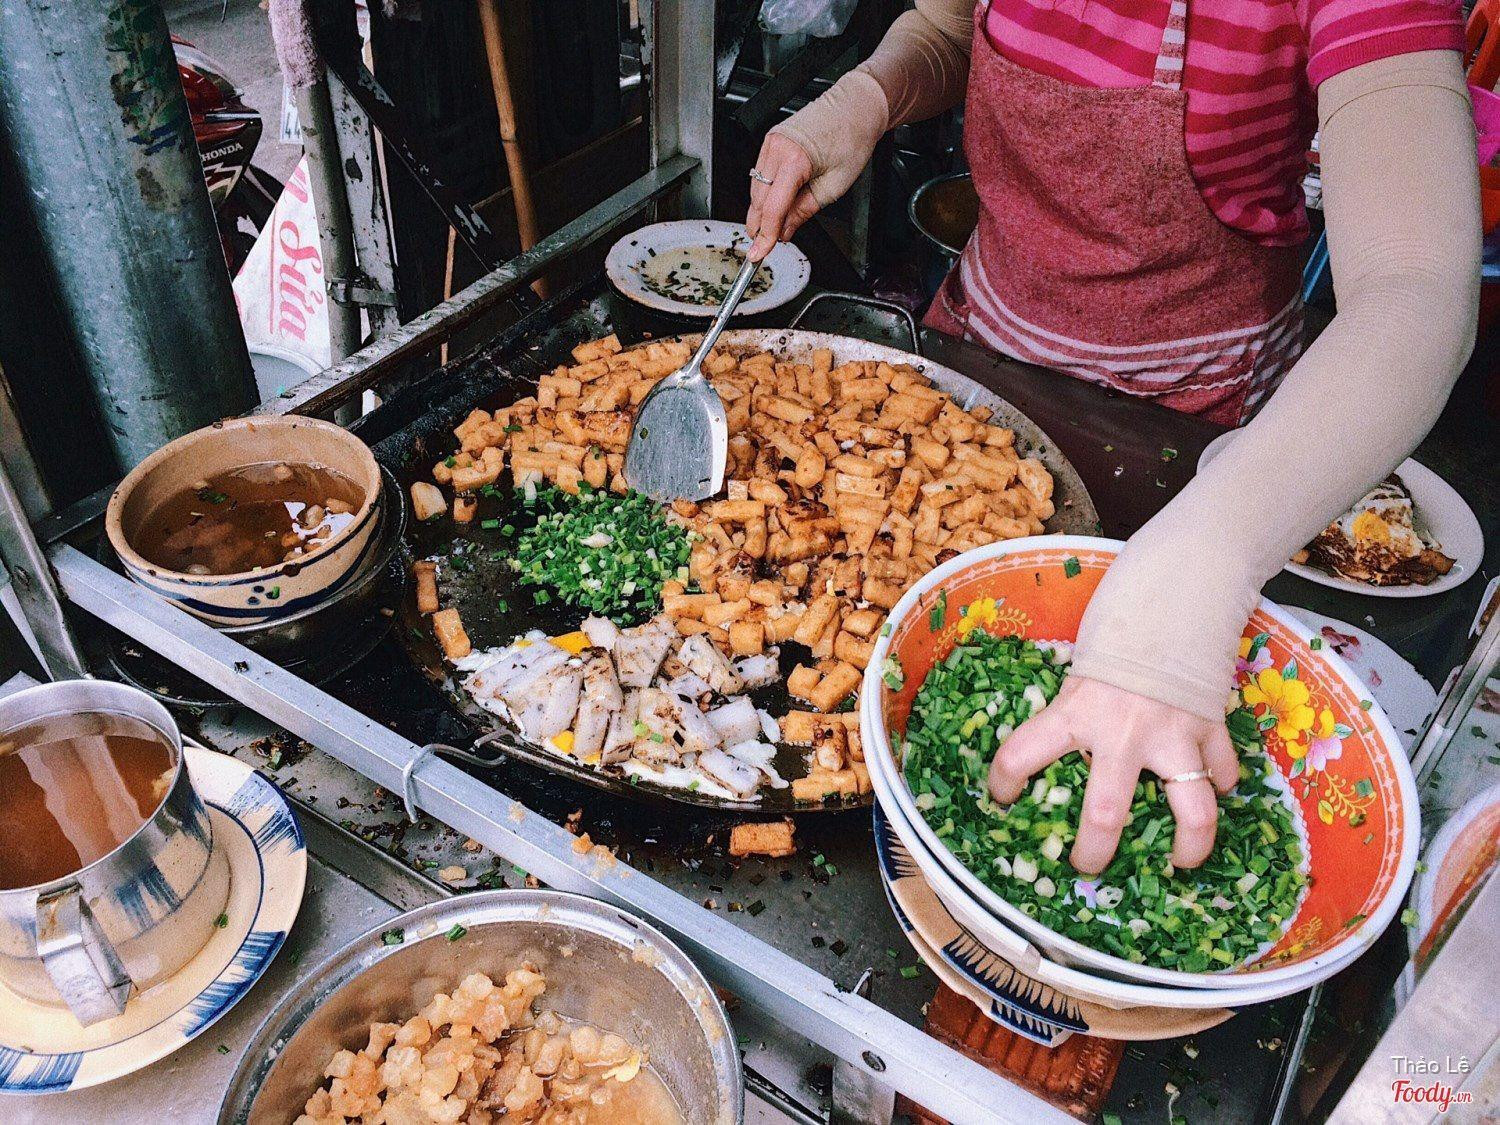 Đặc sản Sài Gòn nhìn như miếng thịt mỡ, du khách ăn vào lại tấm tắc khen ngon - 3